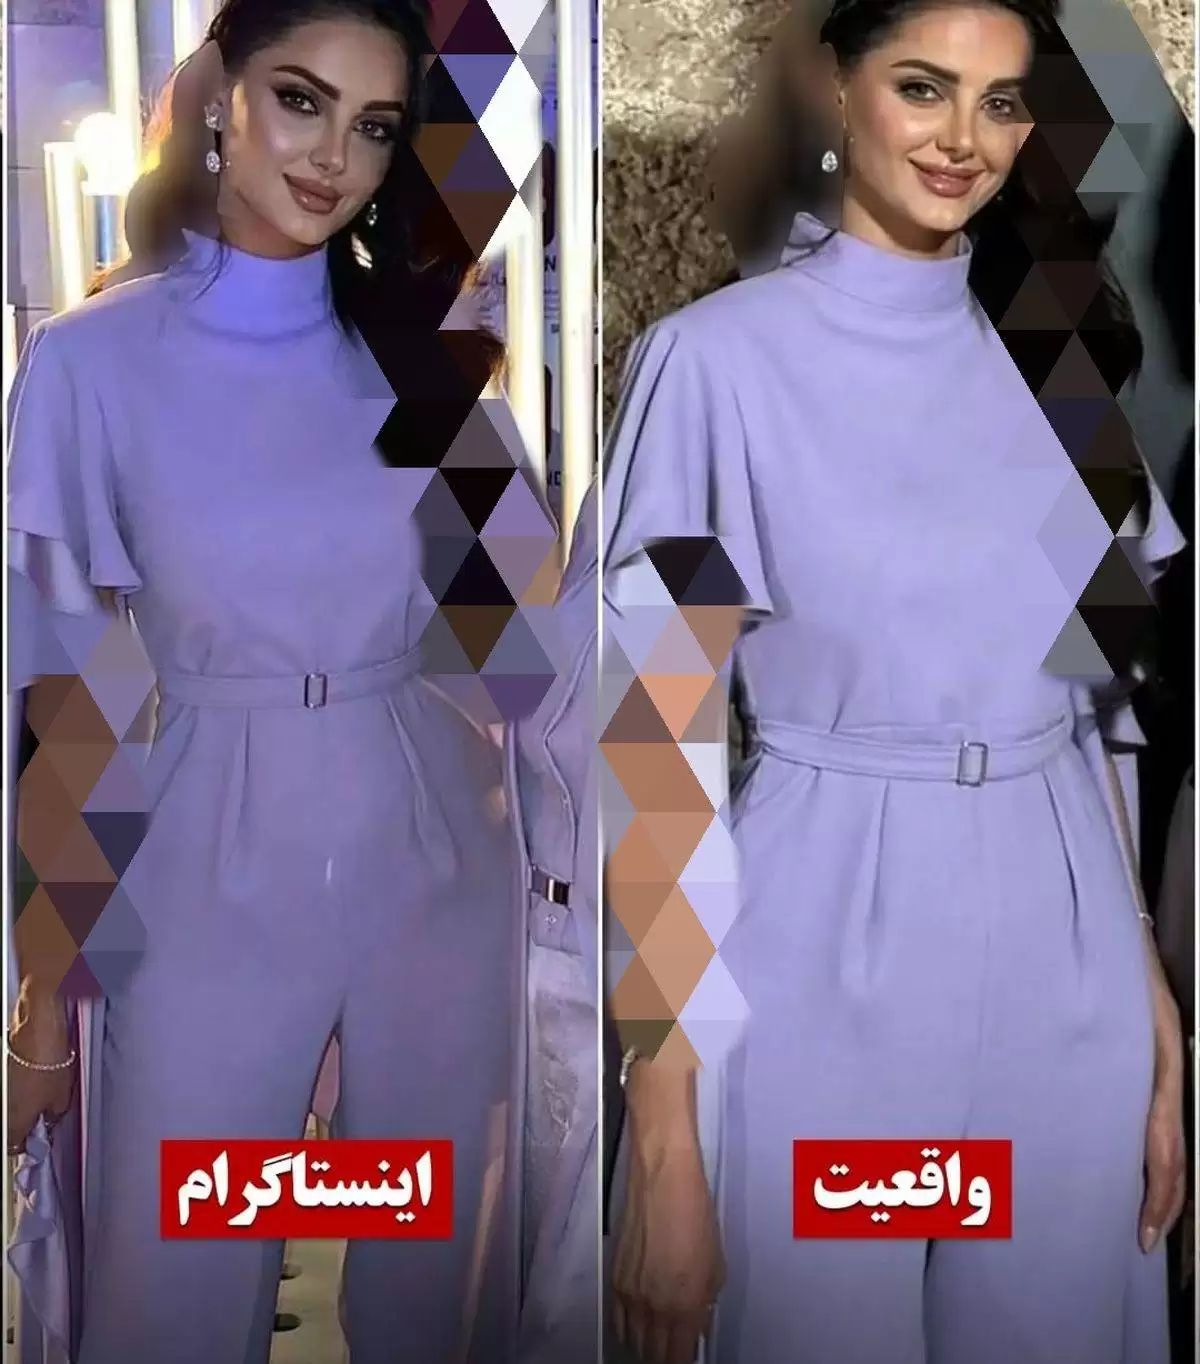 قبل و بعد قشنگ ترین دختر ایران !  -  چهره واقعی مه لقا جابری شوک آور است ! + تصاویری هوش پران